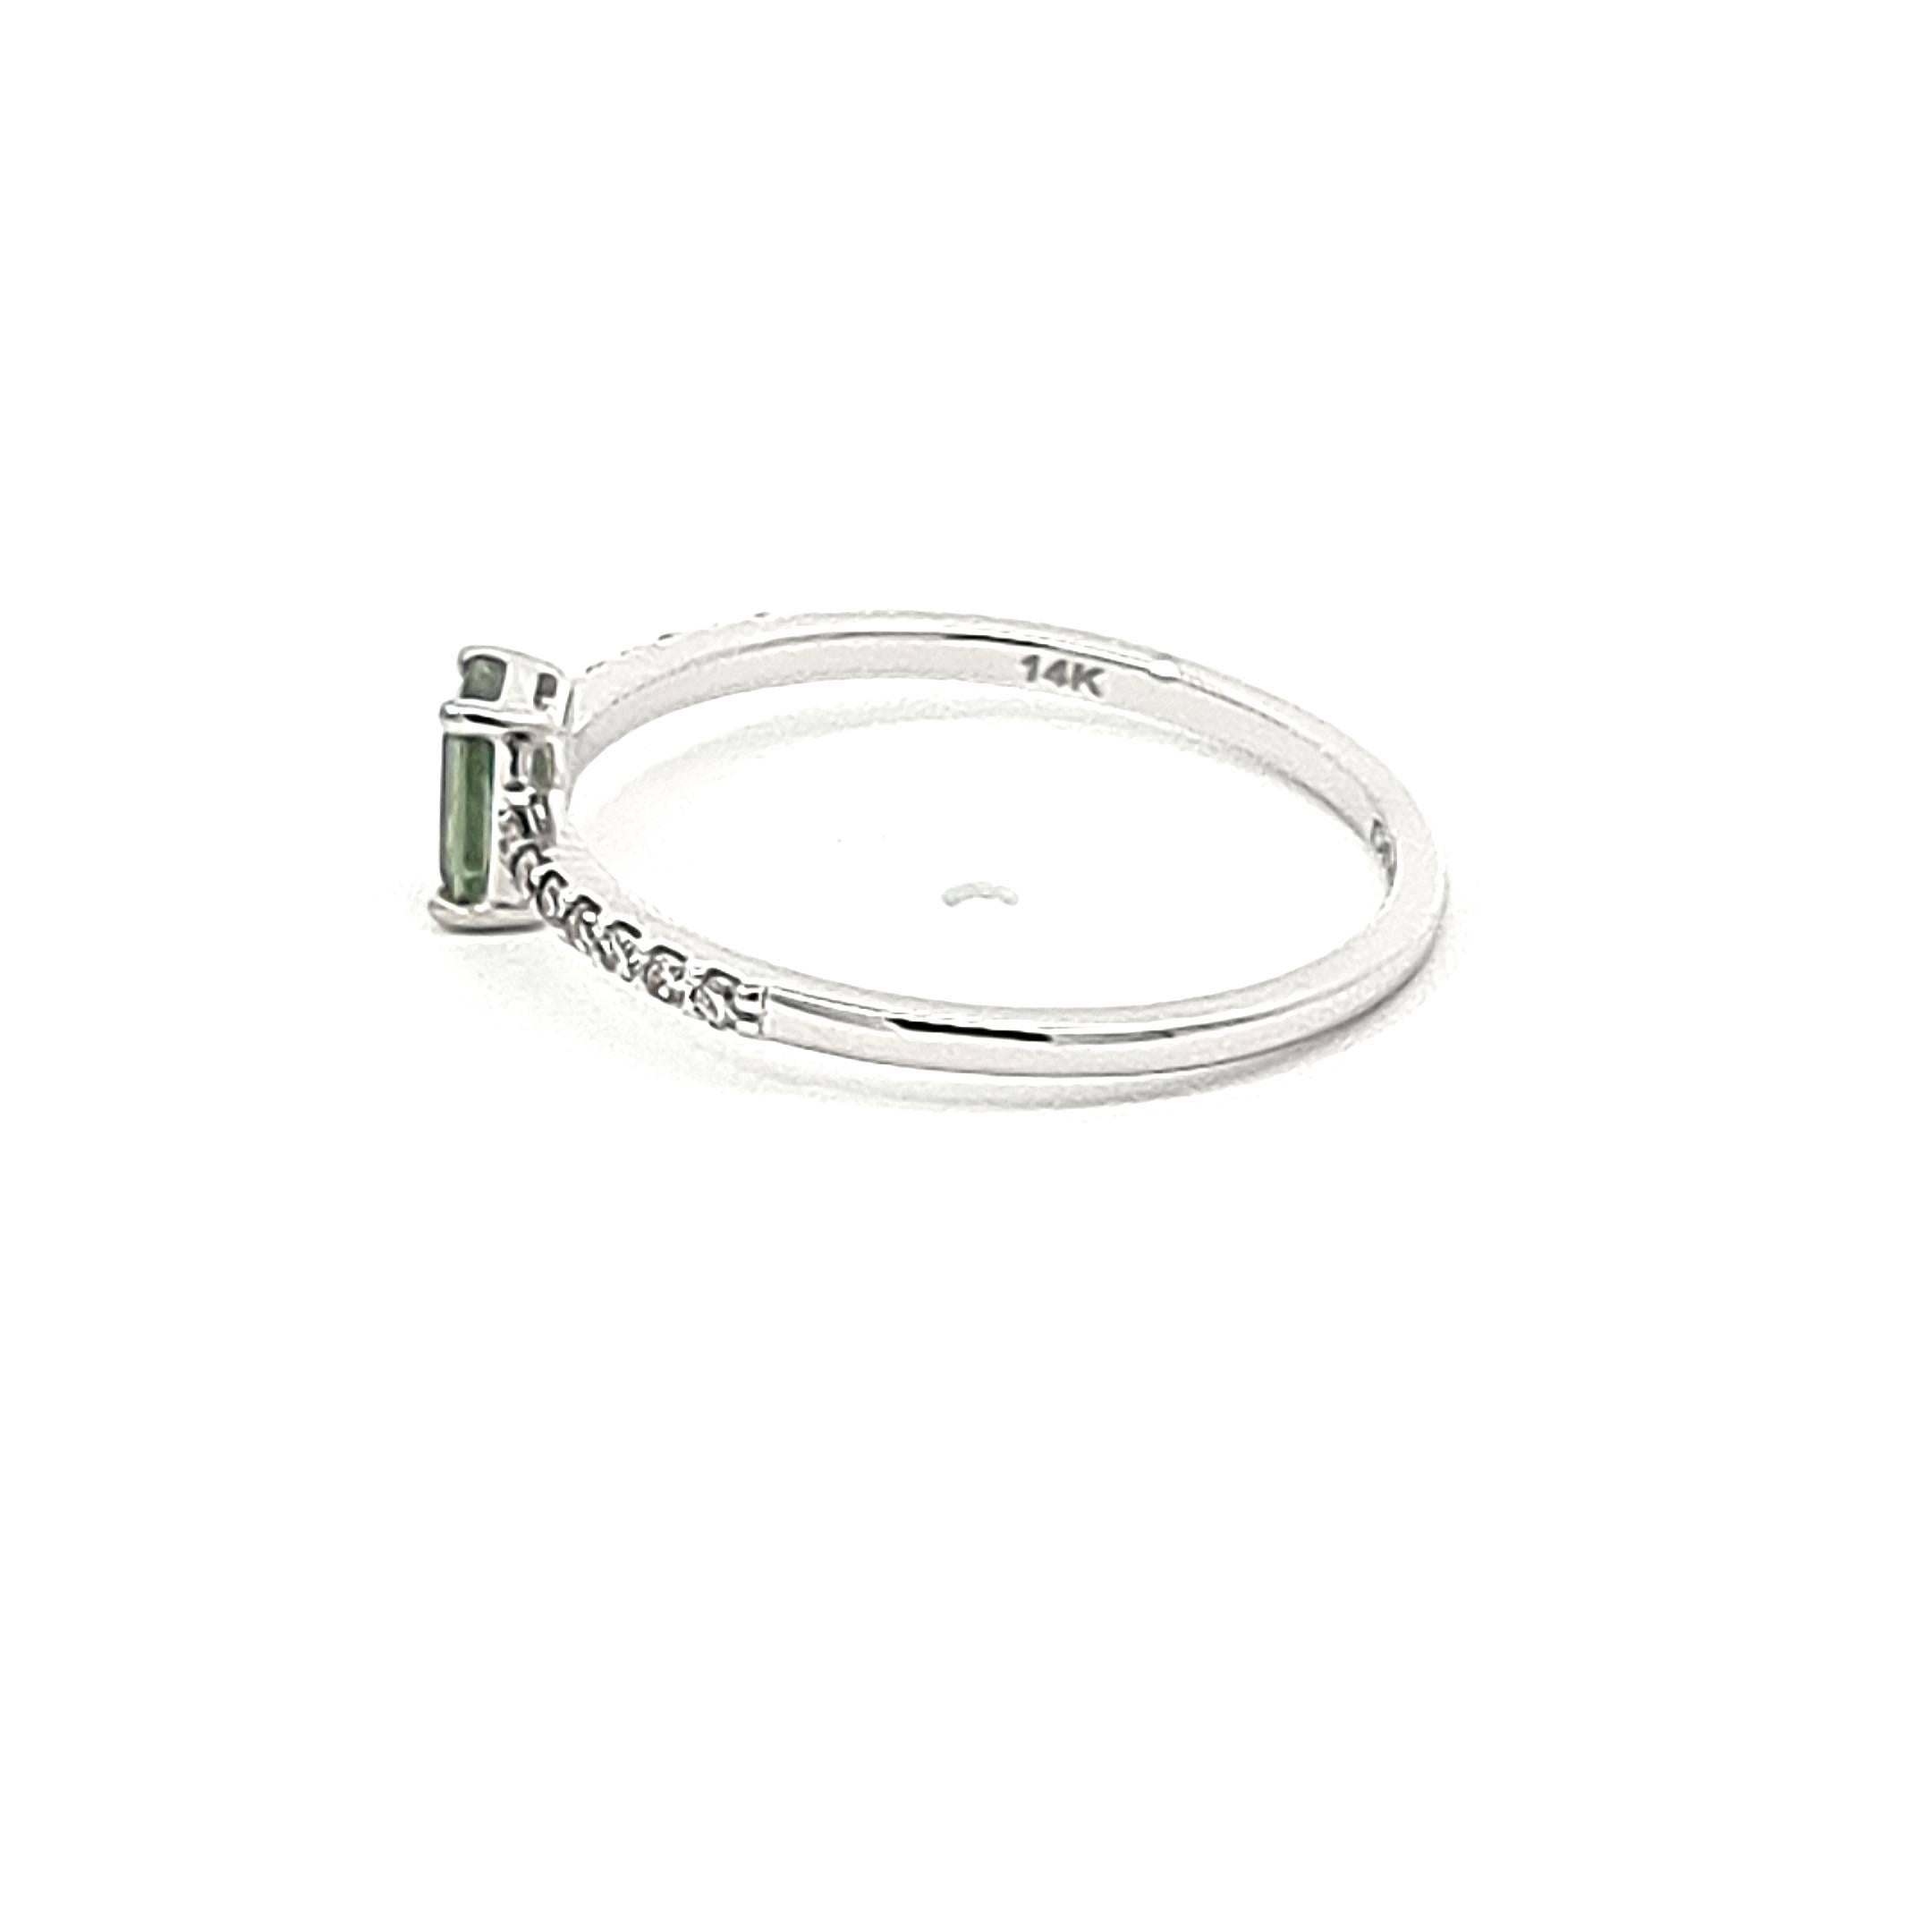 Lassen Sie sich von unserem Ring aus 14-karätigem Weißgold verzaubern, der Charme und Raffinesse in sich vereint. Im Mittelpunkt steht ein grüner Saphir im Smaragdschliff, ein üppiger Edelstein von 0,37 Karat, der eine natürliche Eleganz ausstrahlt.